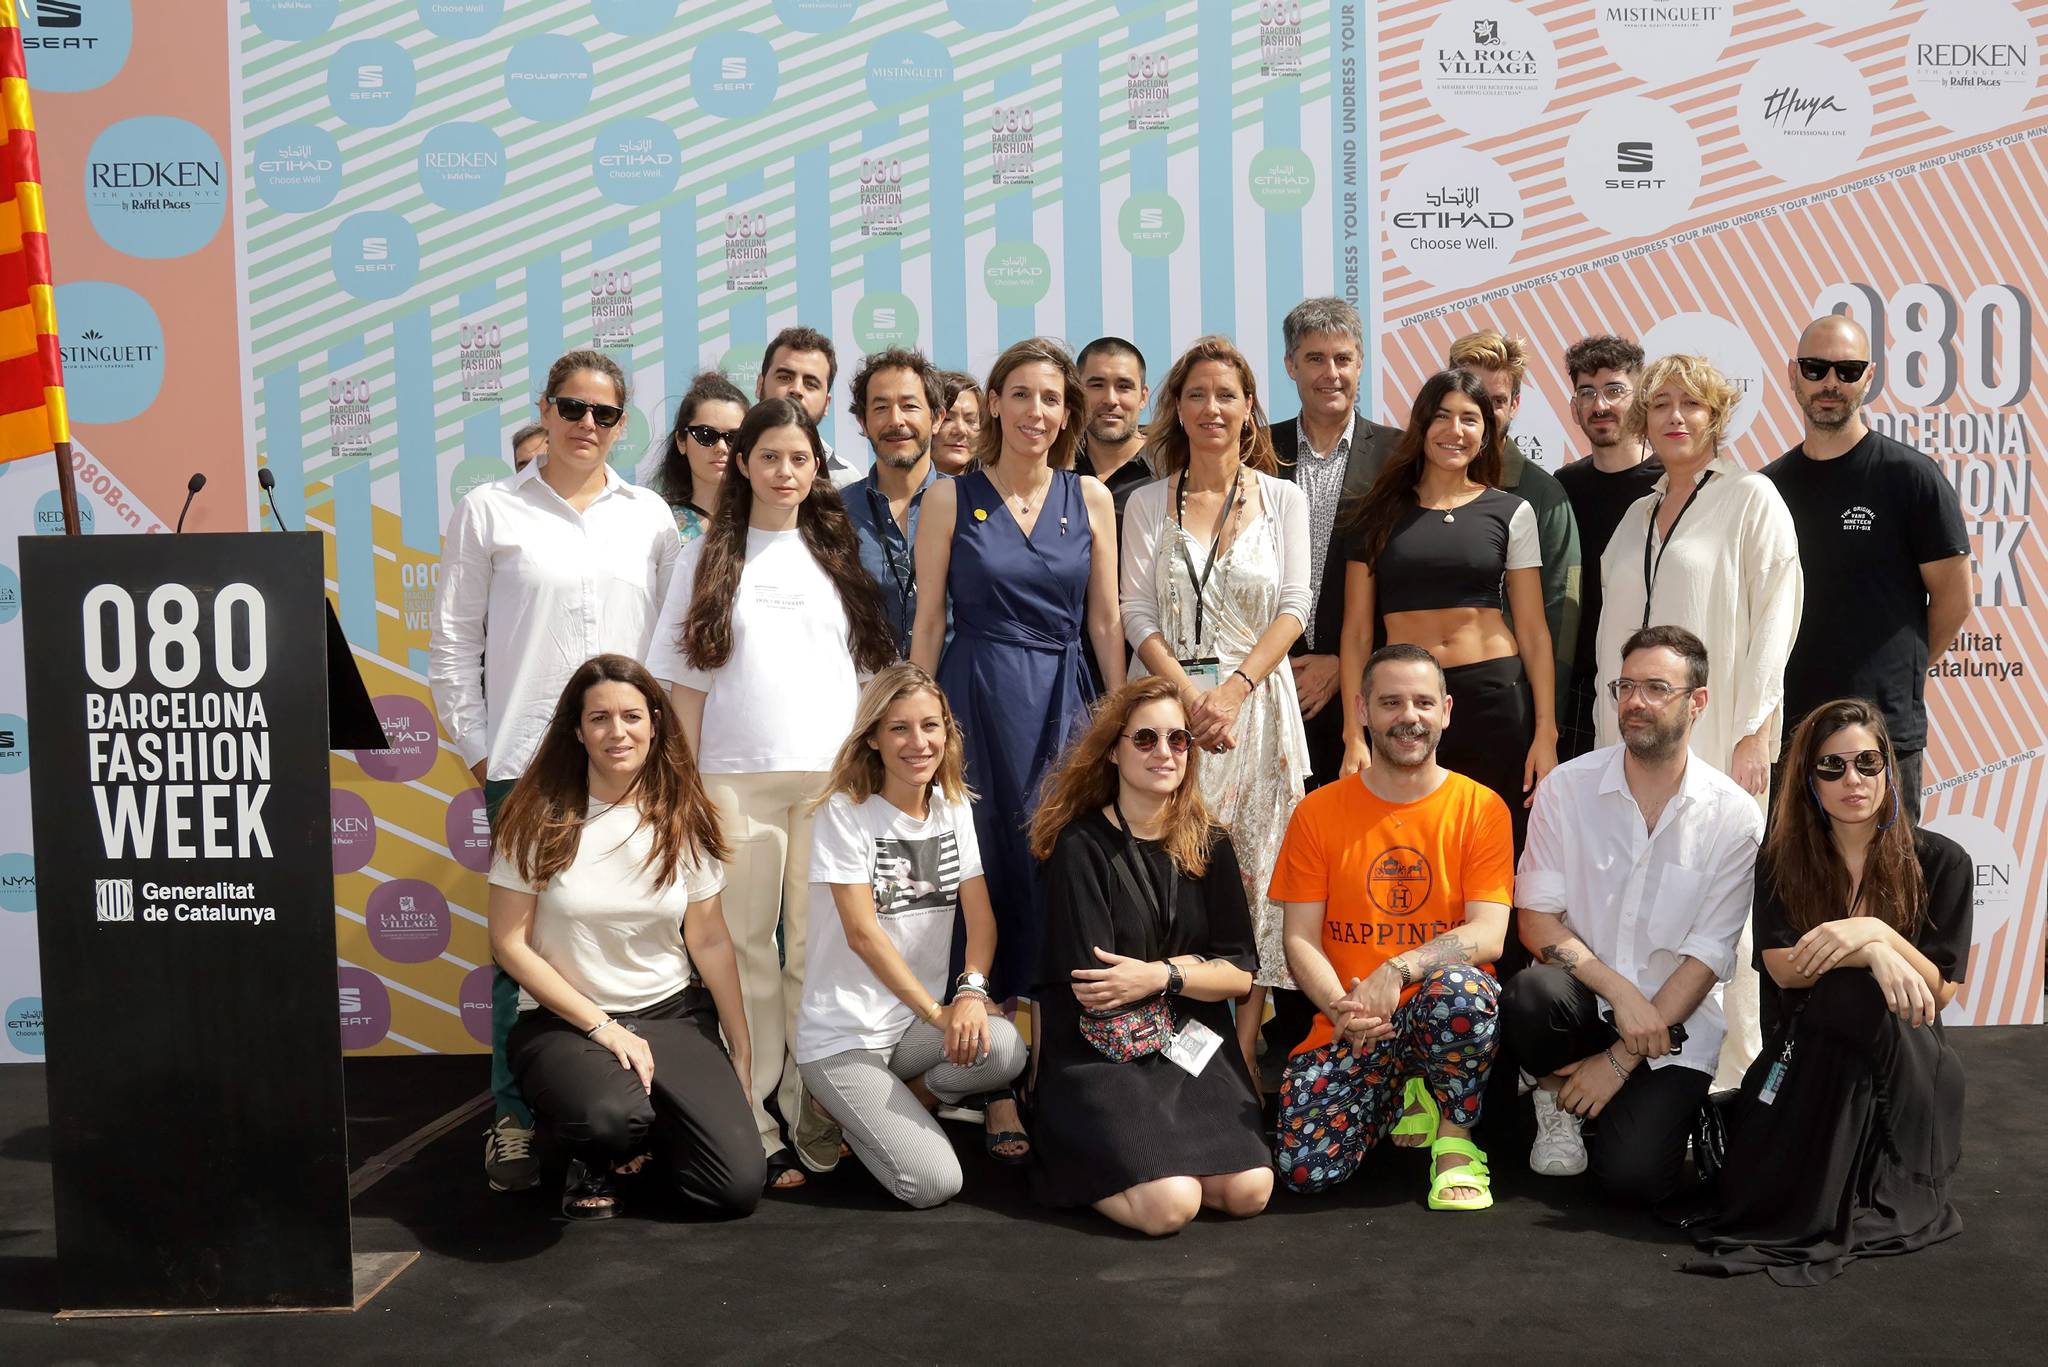 El 080 Barcelona Fashion aposta per la moda sostenible, la tecnologia i el compromís social